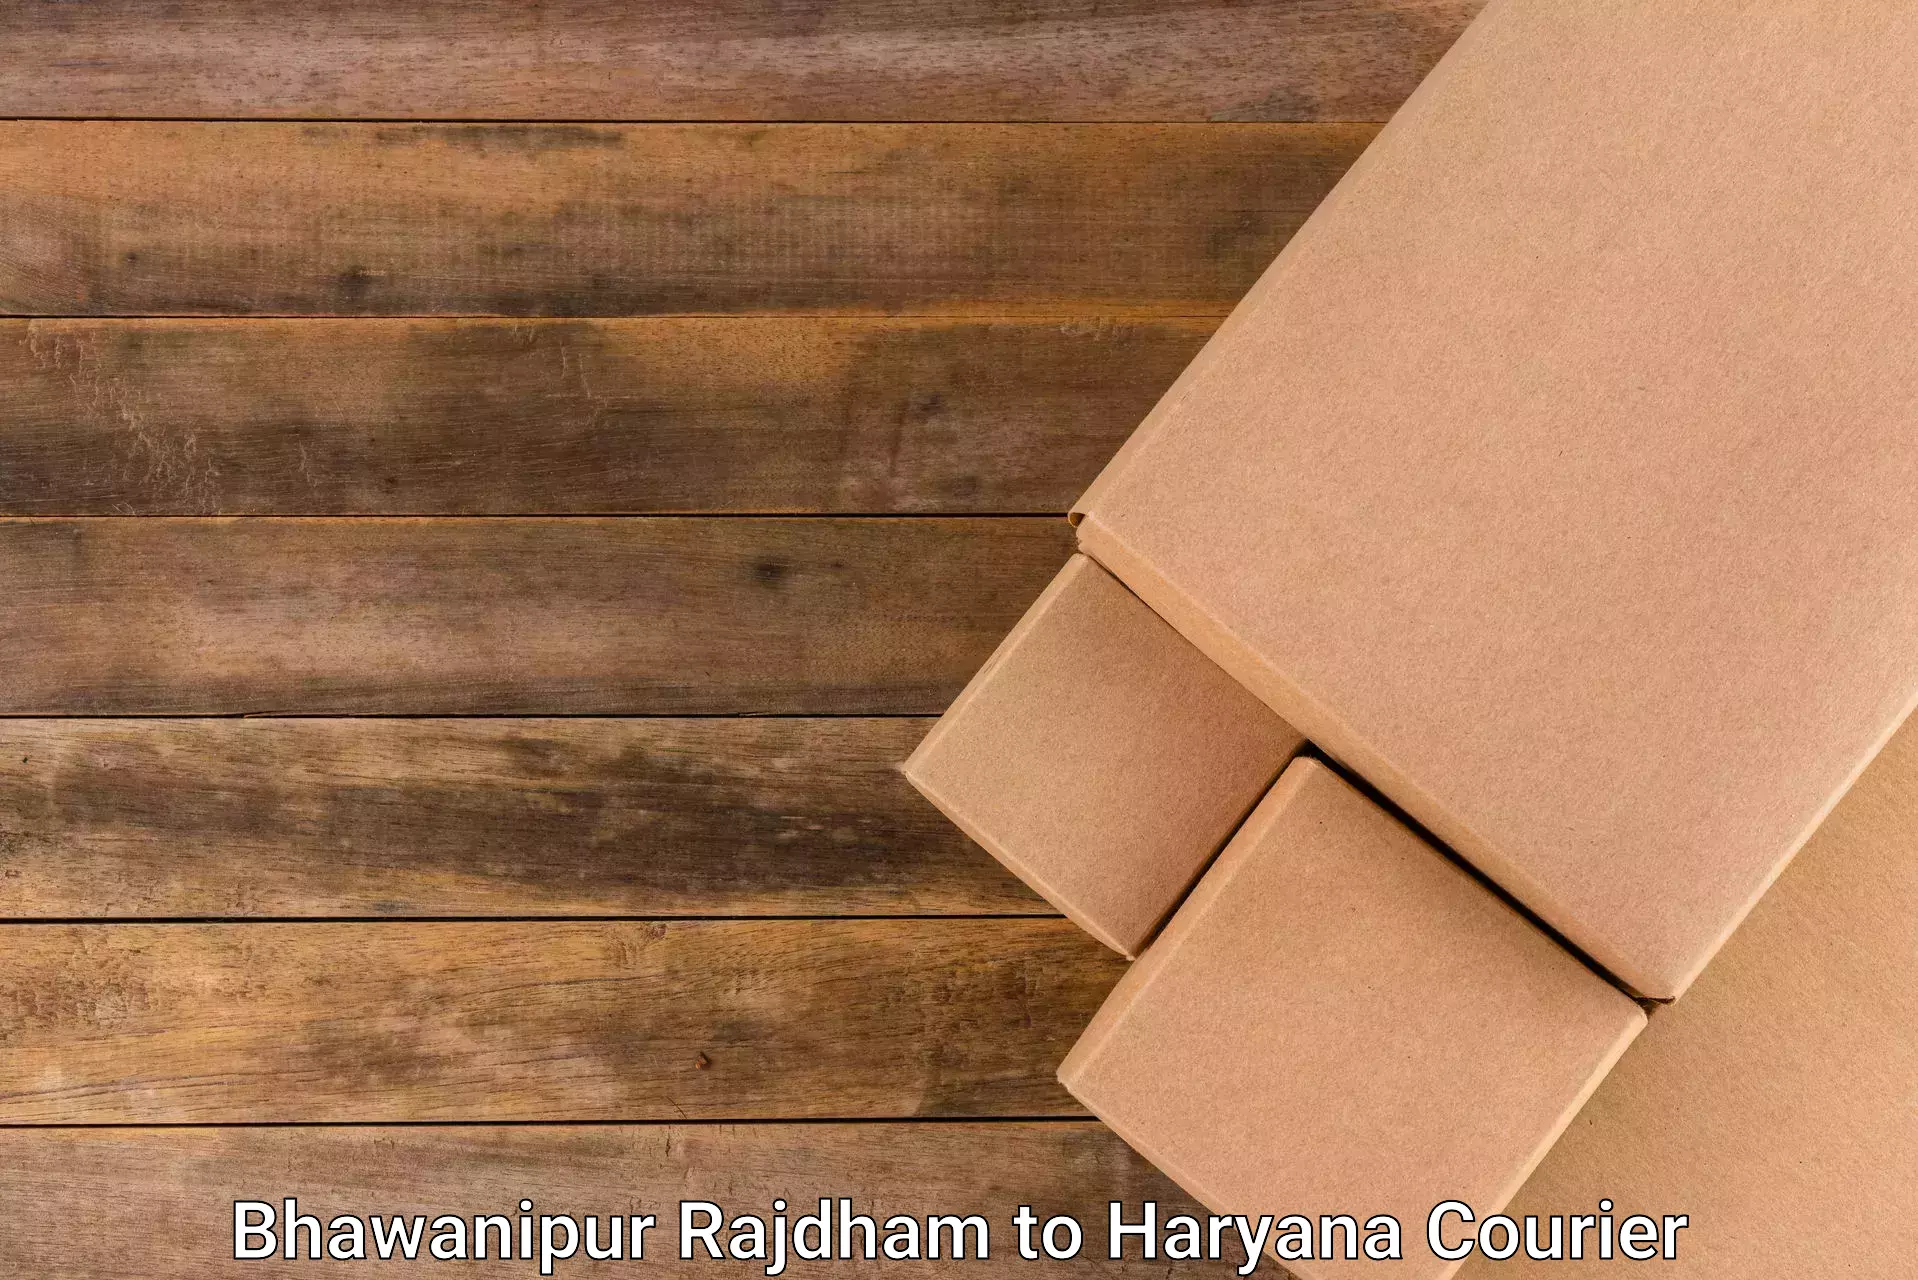 Specialized shipment handling Bhawanipur Rajdham to Kurukshetra University